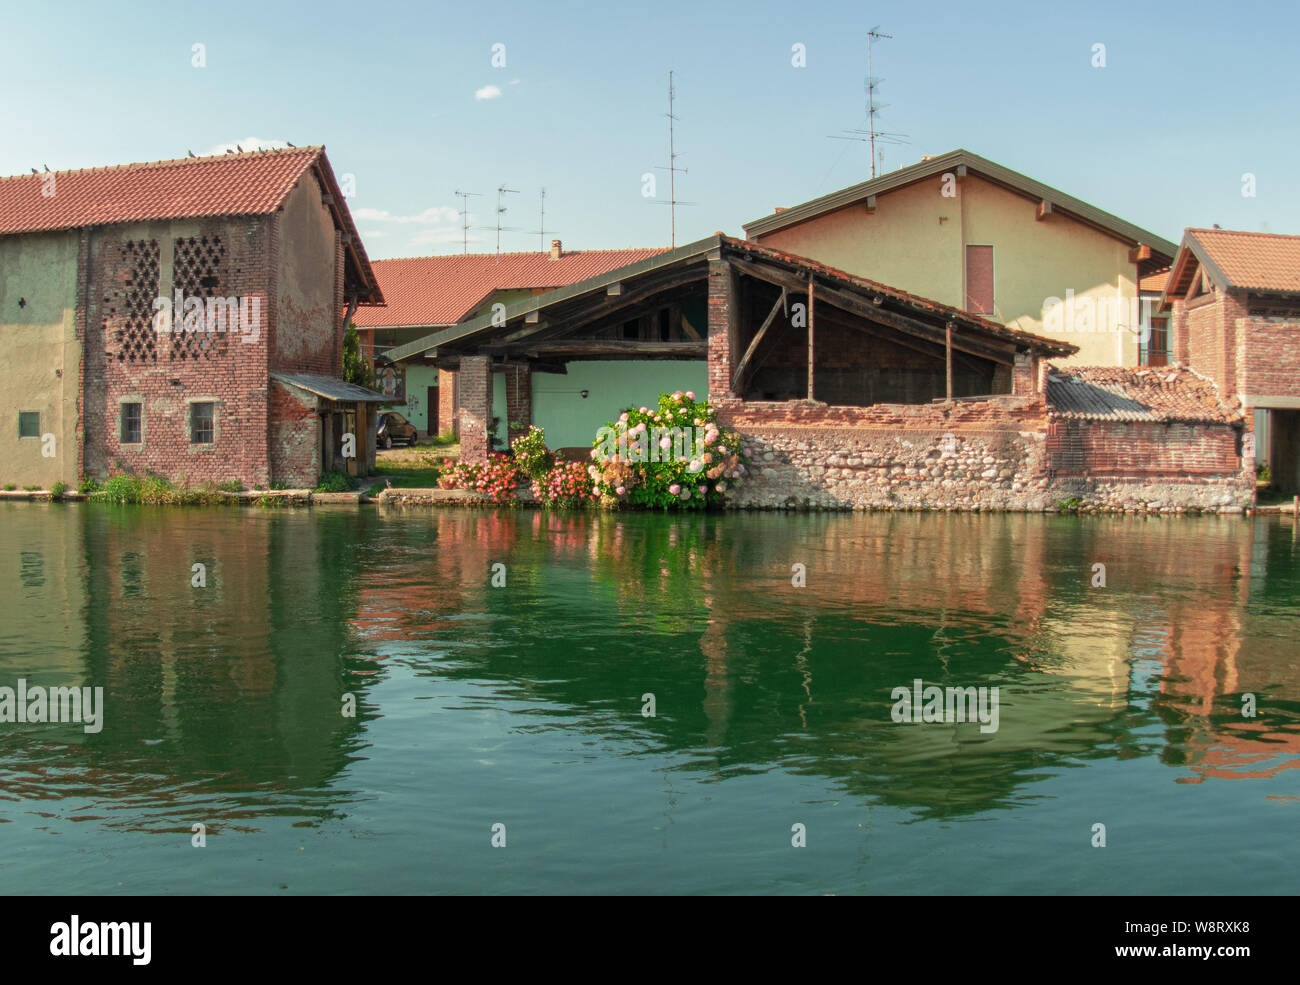 Naviglio Grande (Großer Kanal): Land der Wasser- und Bauernhäuser. Mailand - Italien Stockfoto